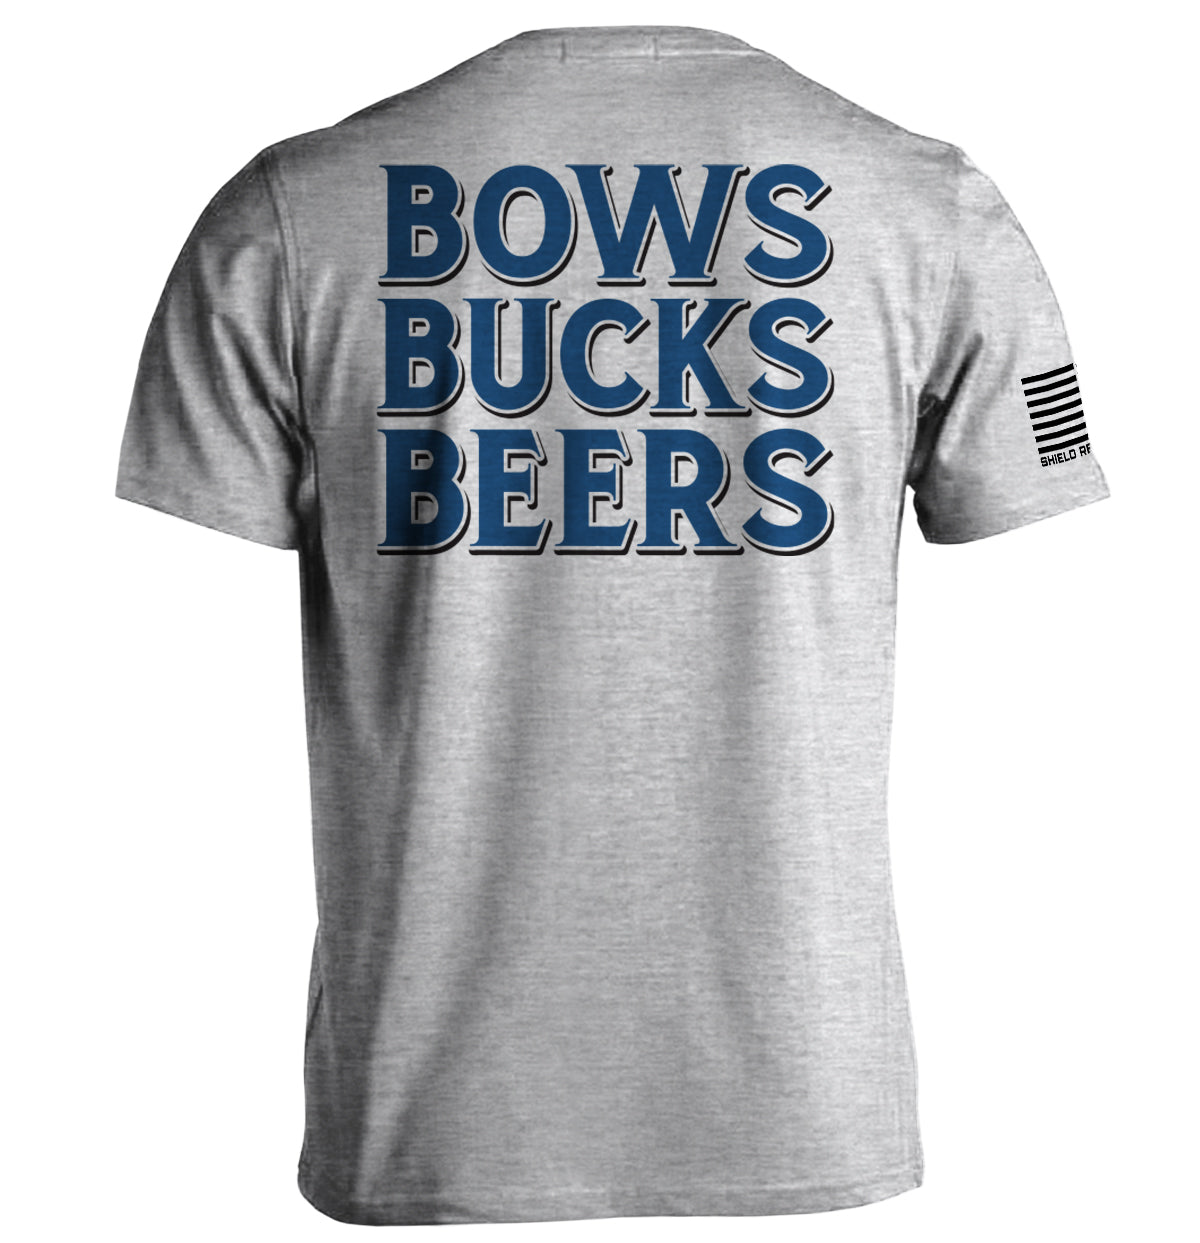 Bows Bucks Beers